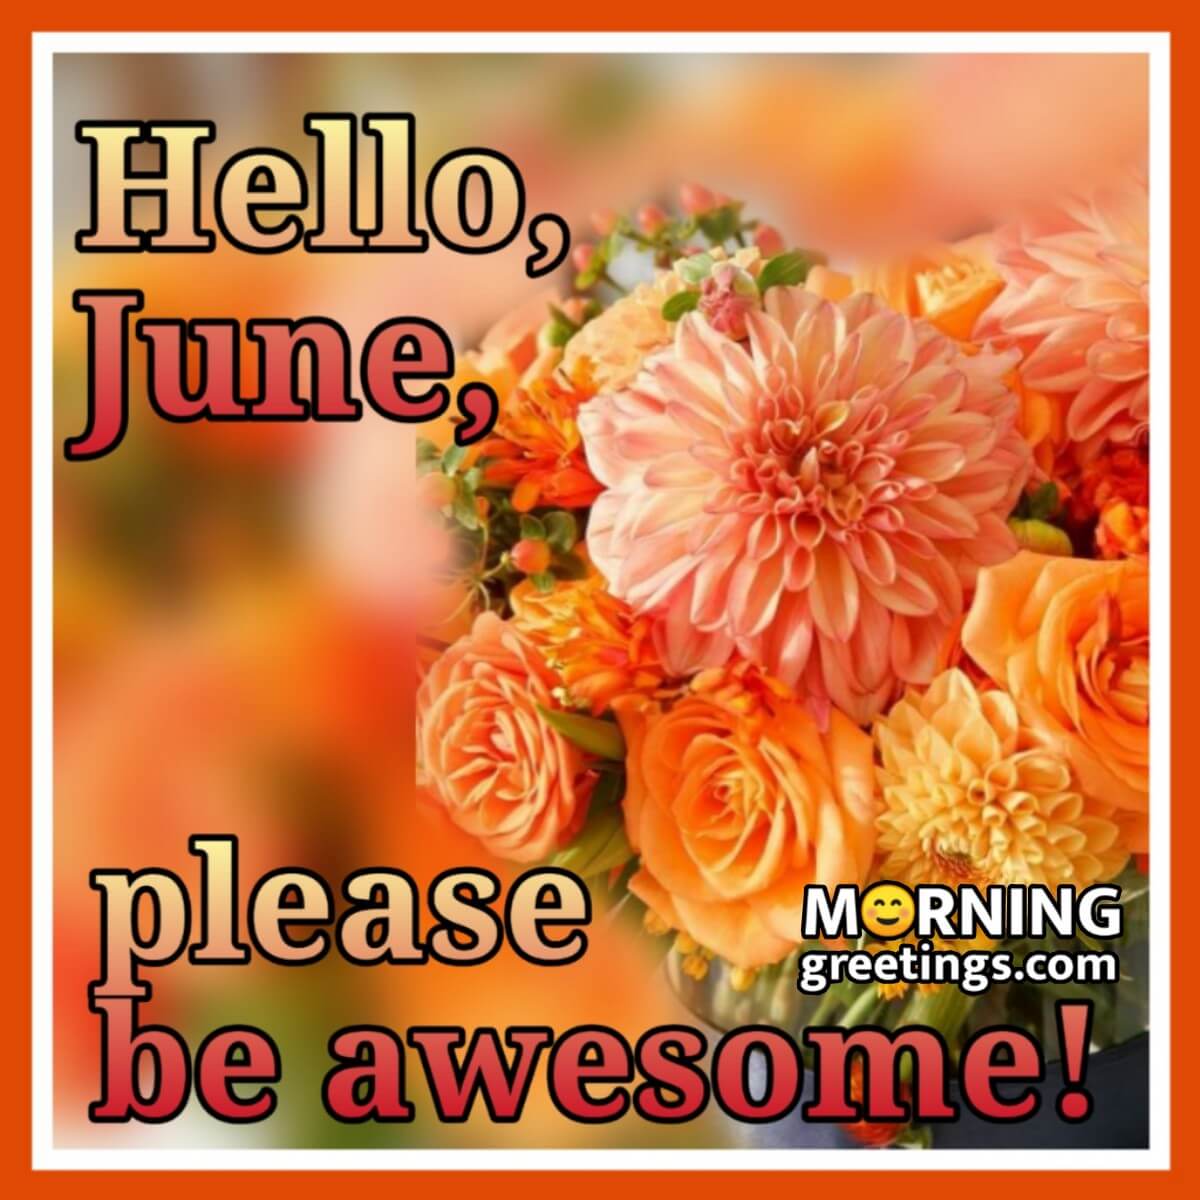 Hello June Please Be Awsome